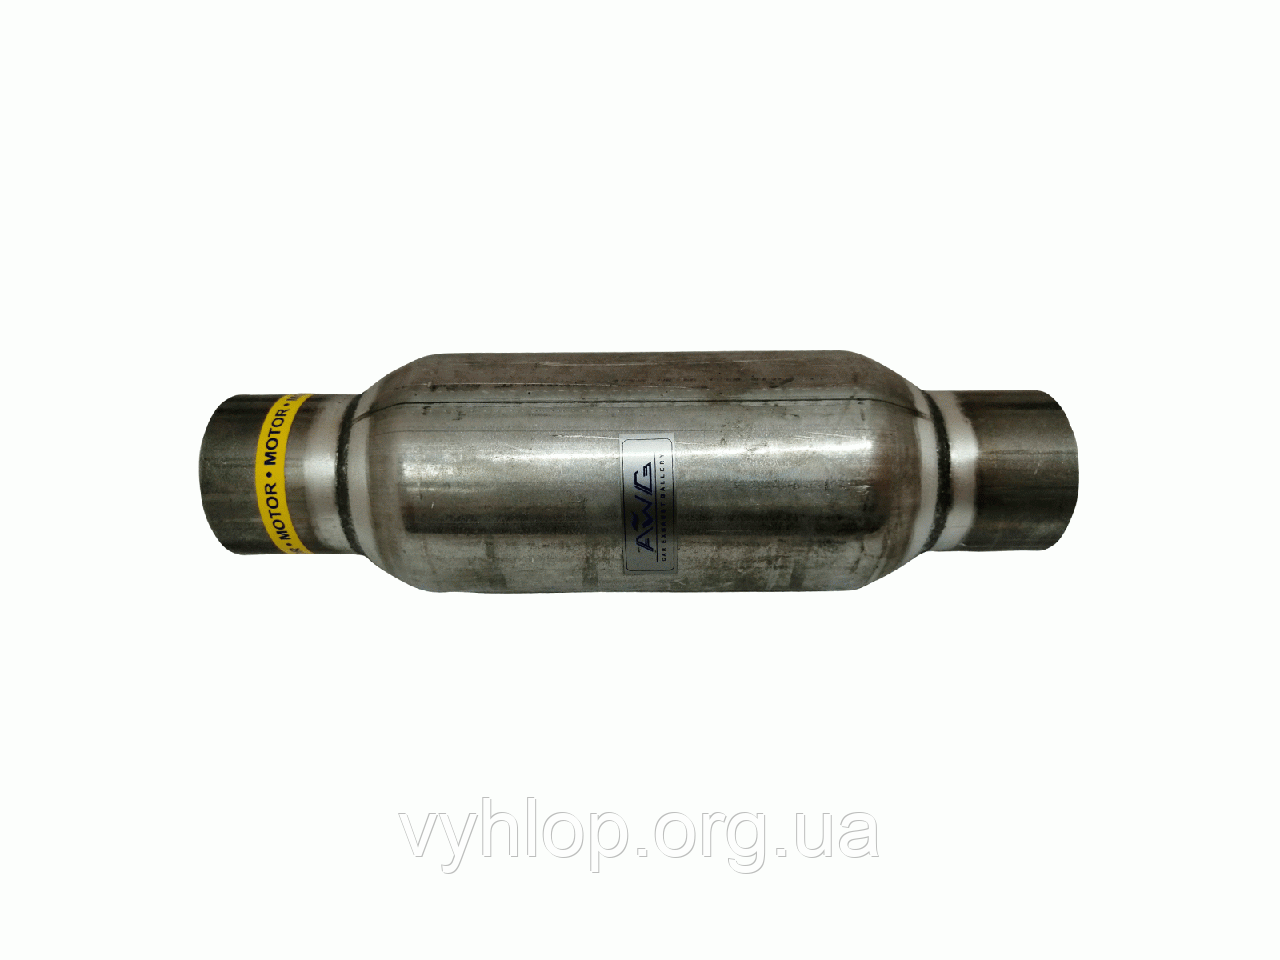 Строгер (Х-Резонатор) ф 60, довжина 550 (60x550) AWG